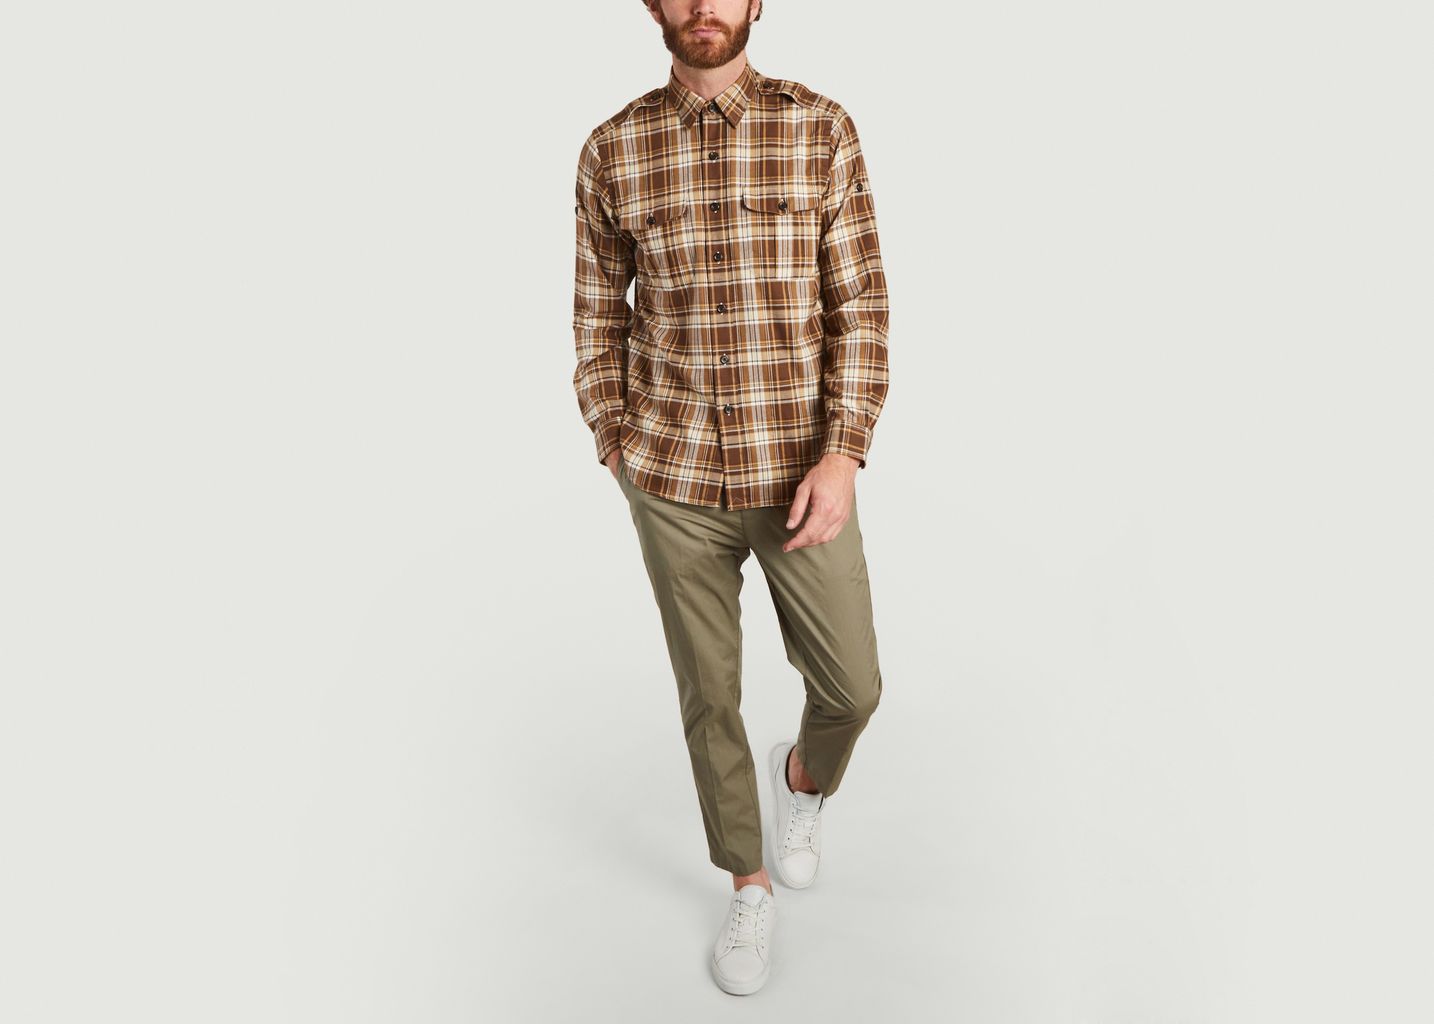 Long Sleeve Shirt - Polo Ralph Lauren